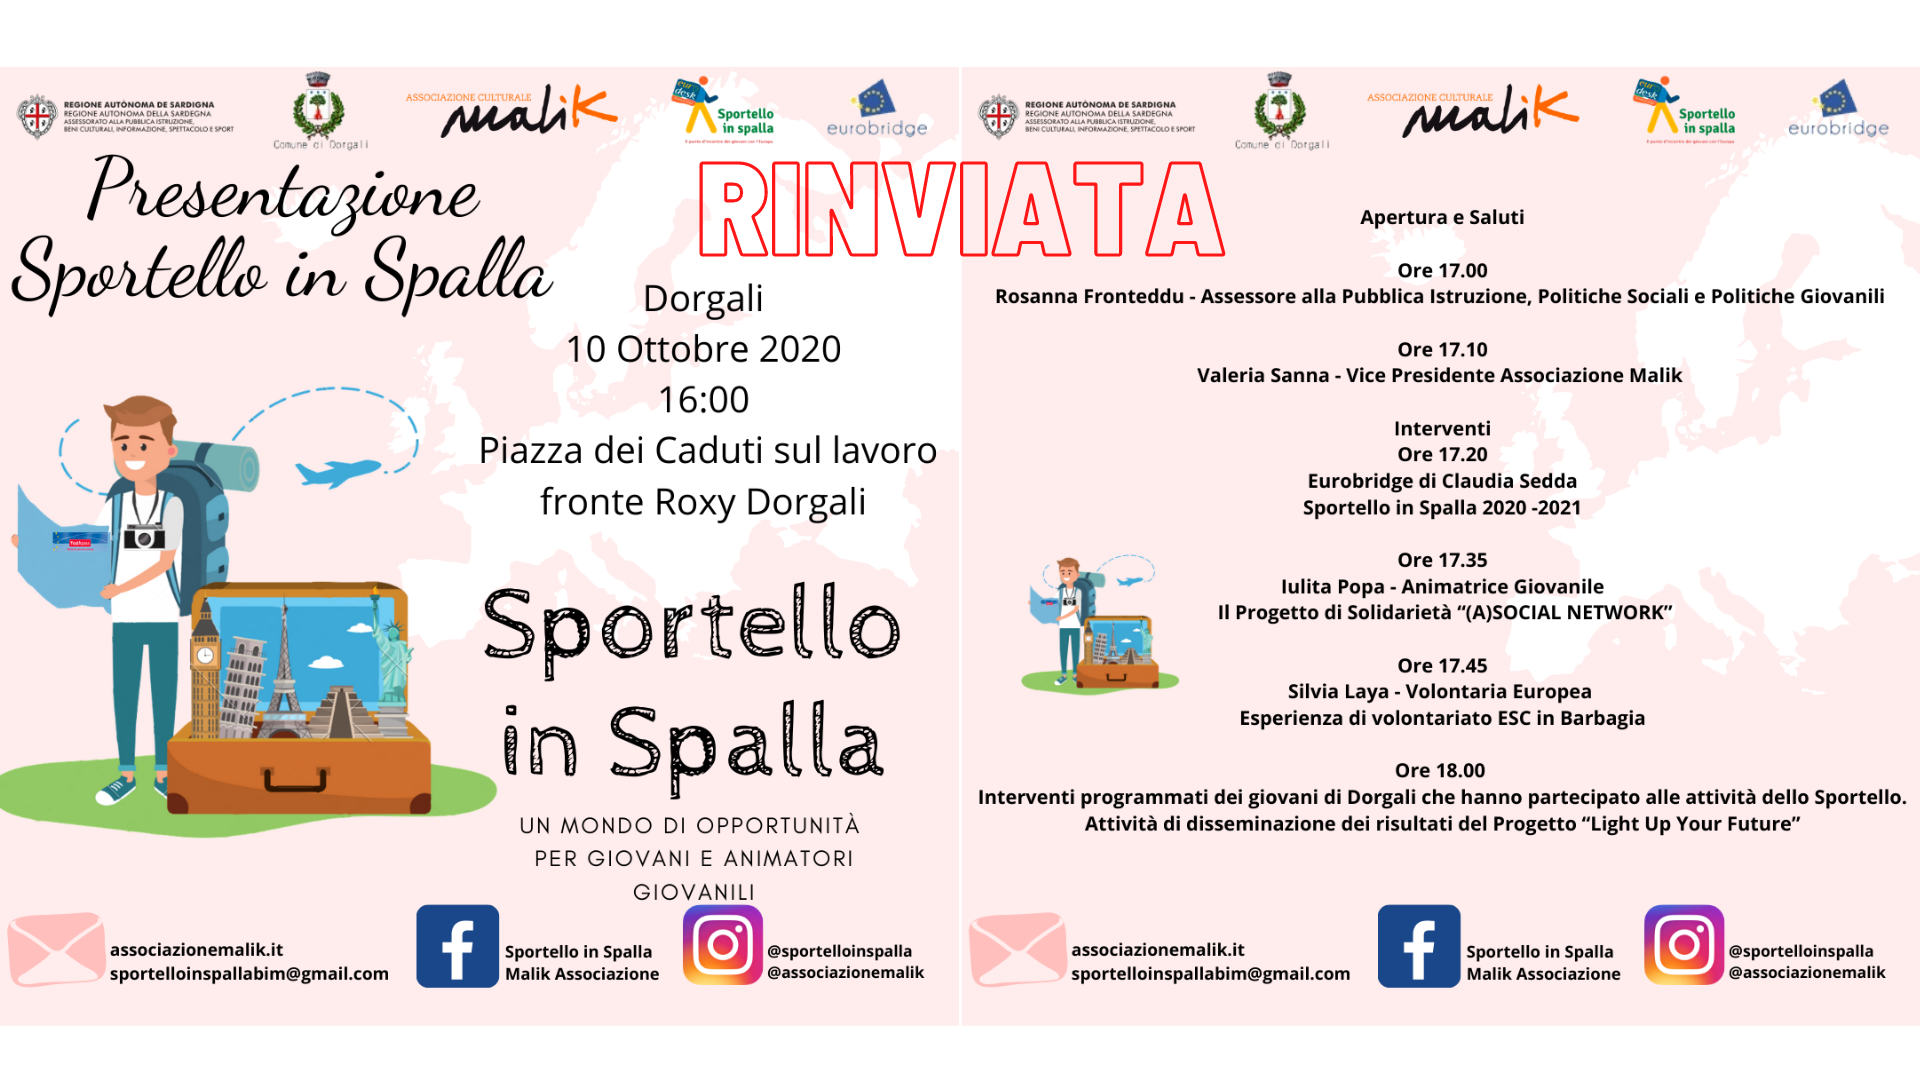 Rinviata la presentazione pubblica del progetto Sportello in Spalla a Dorgali  Nuovo Appuntamento il 10 ottobre presso Piazza dei Caduti sul lavoro